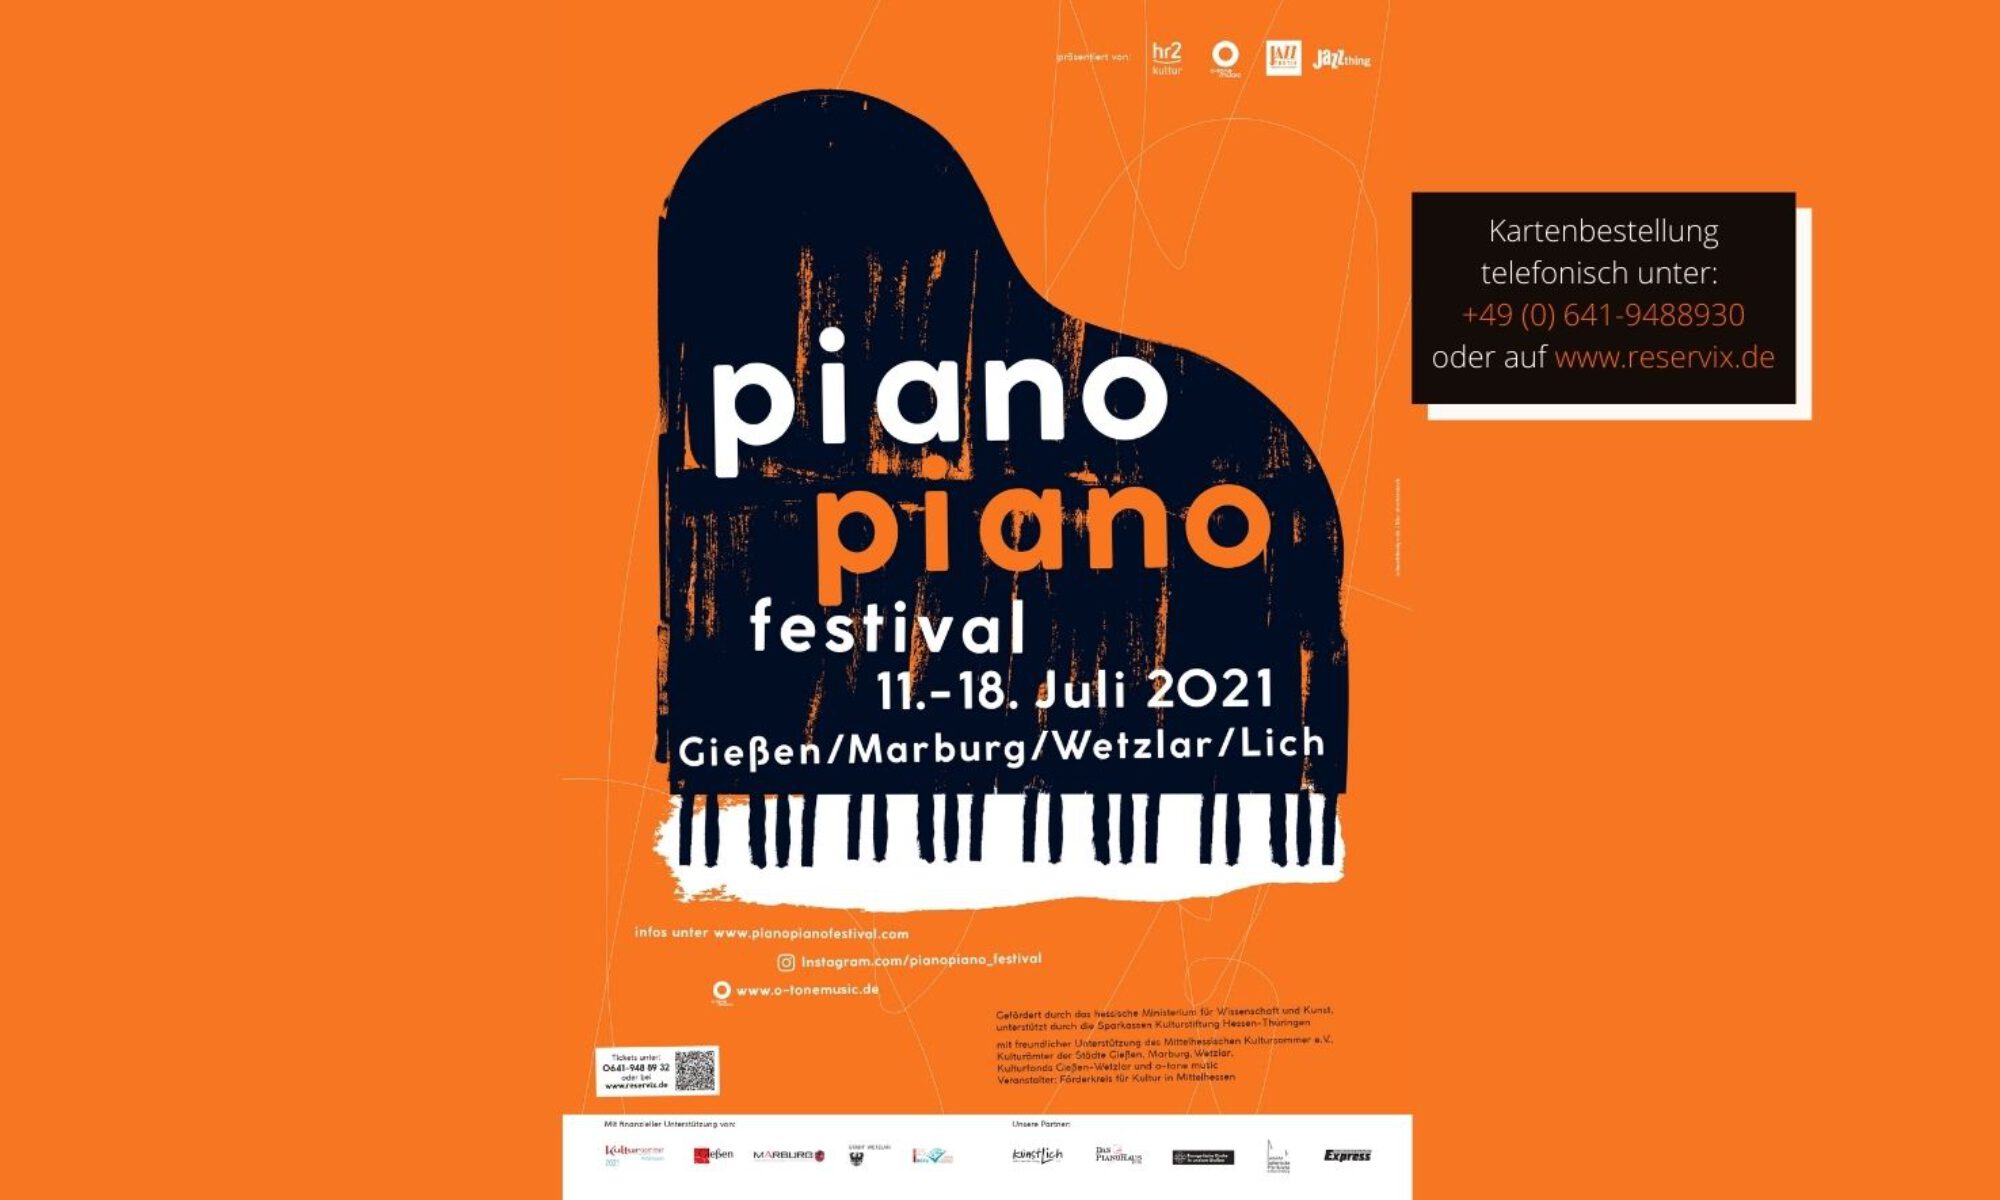 PianoFestival in Gießen, Marburg, Wetzlar und Lich